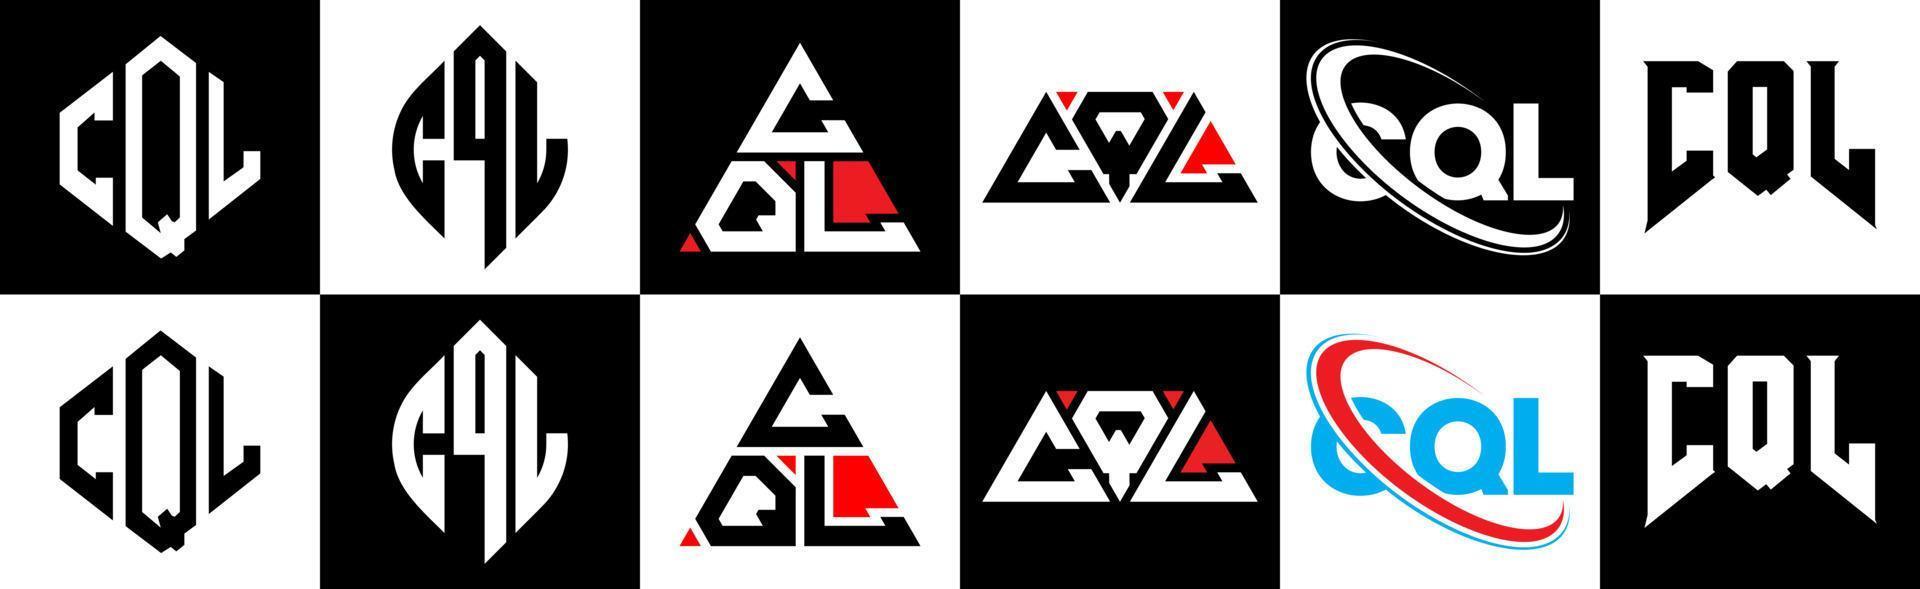 cql-Buchstaben-Logo-Design in sechs Stilen. cql polygon, kreis, dreieck, sechseck, flacher und einfacher stil mit schwarz-weißem buchstabenlogo in einer zeichenfläche. cql minimalistisches und klassisches Logo vektor